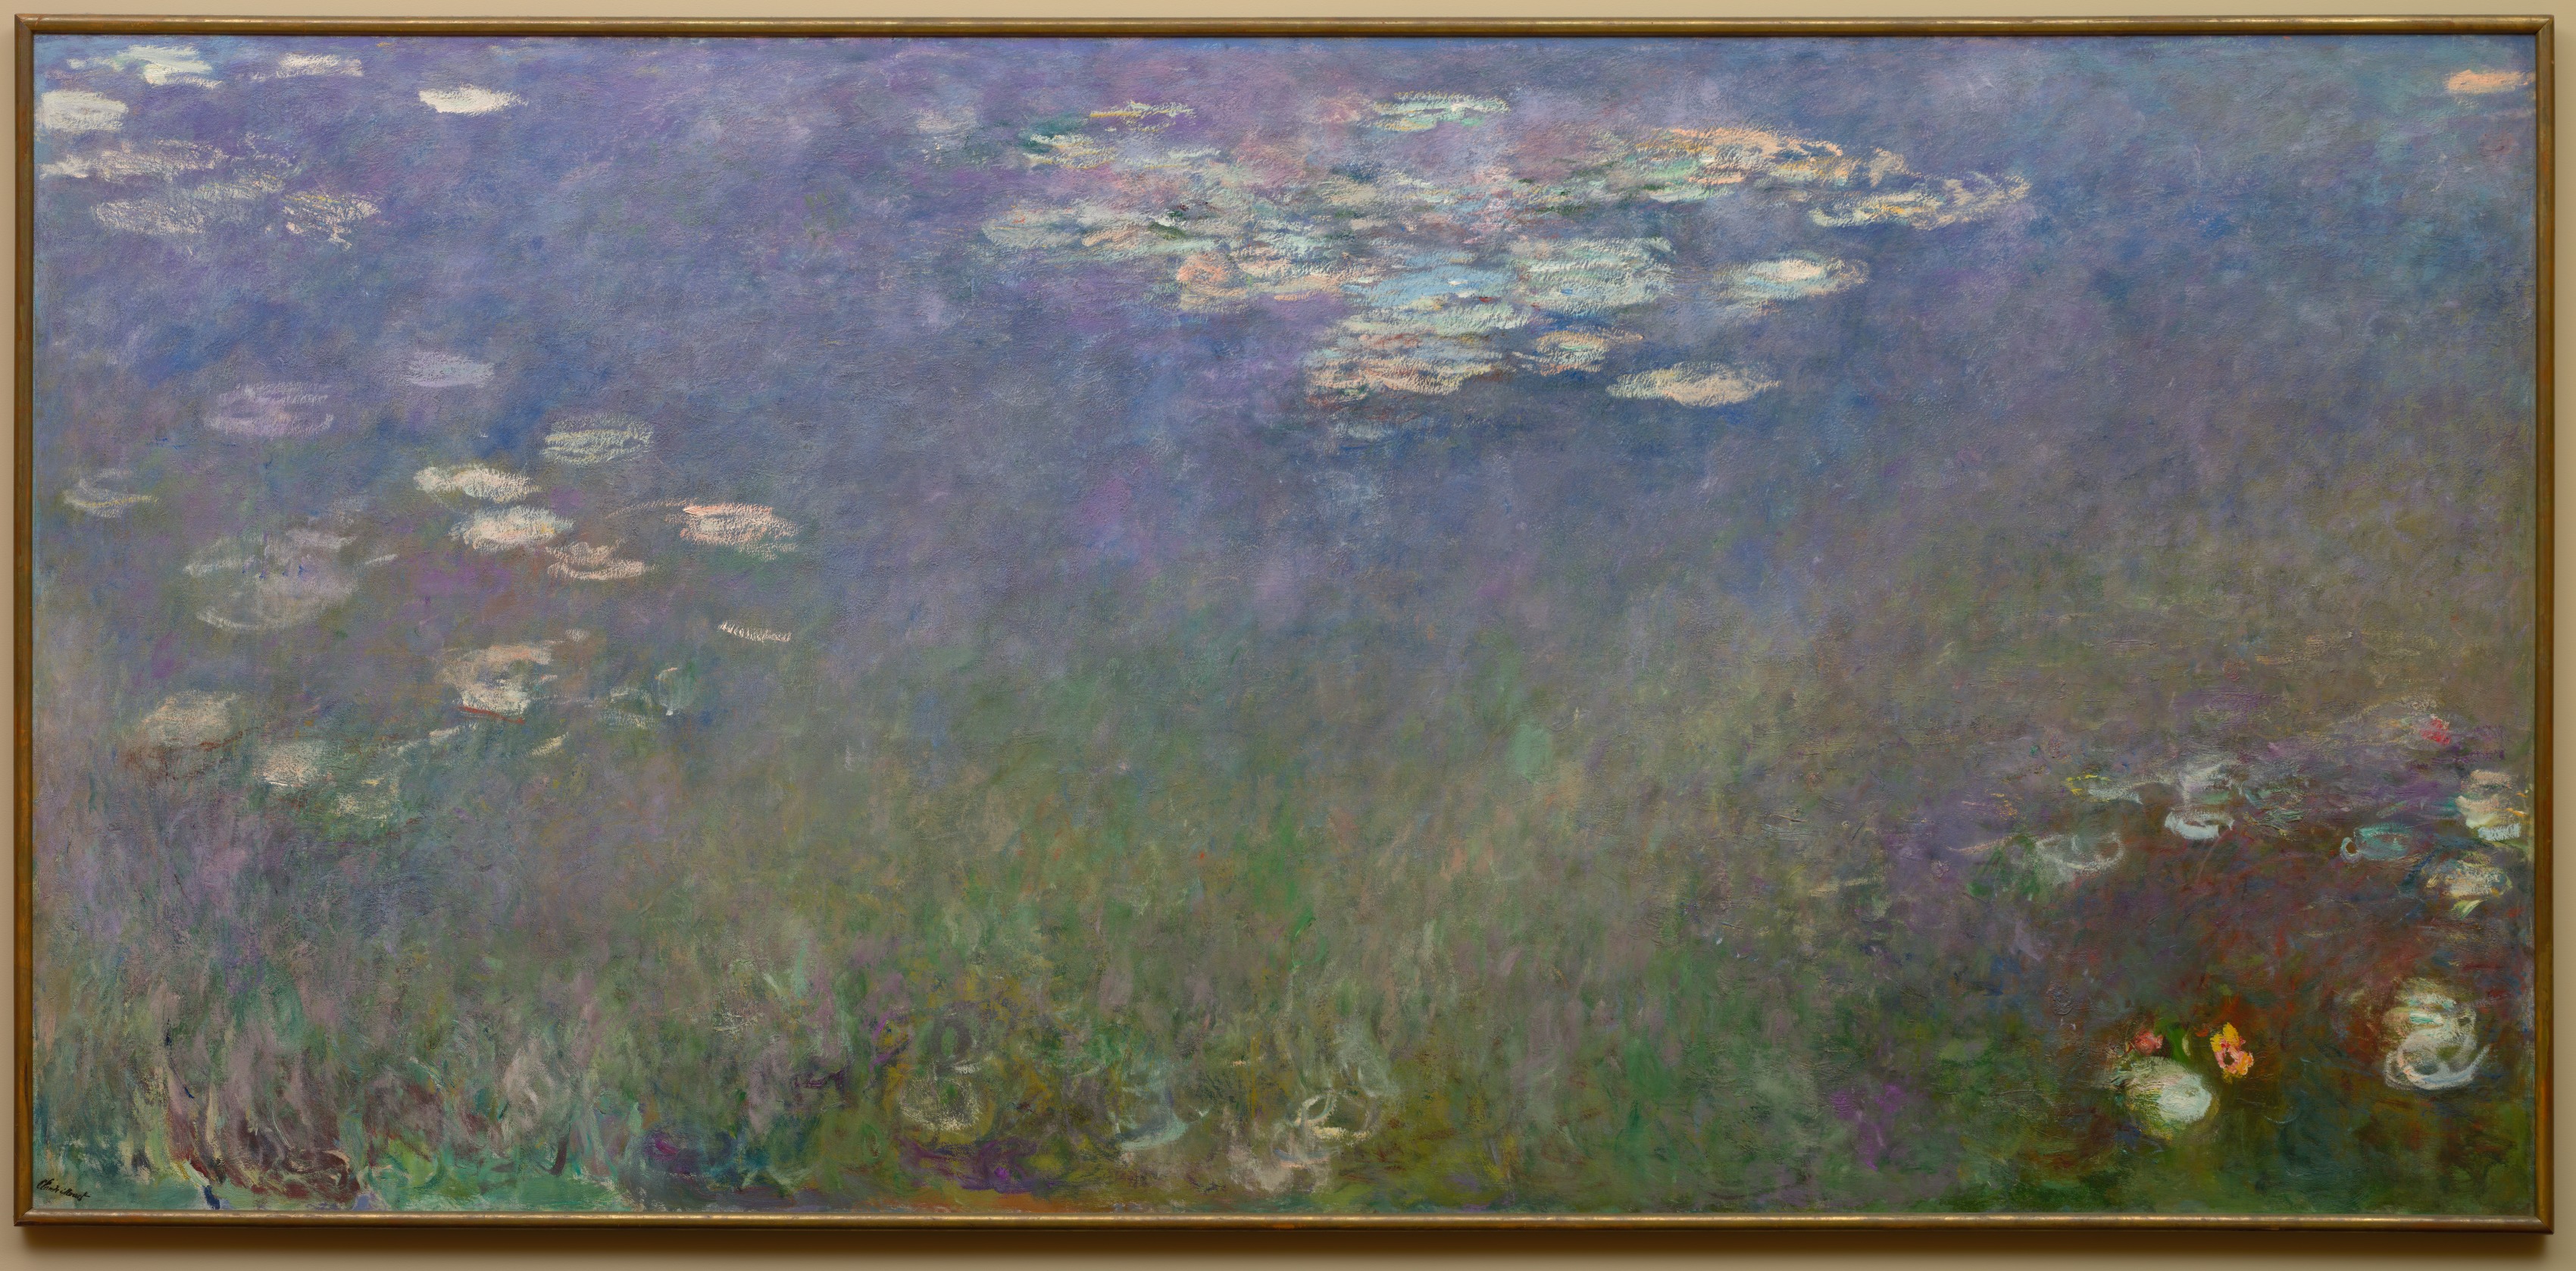 Nymphéas (Agapanthe) by Claude Monet - c. 1915–26 - 201.3 x 425.6 cm Cleveland Museum of Art